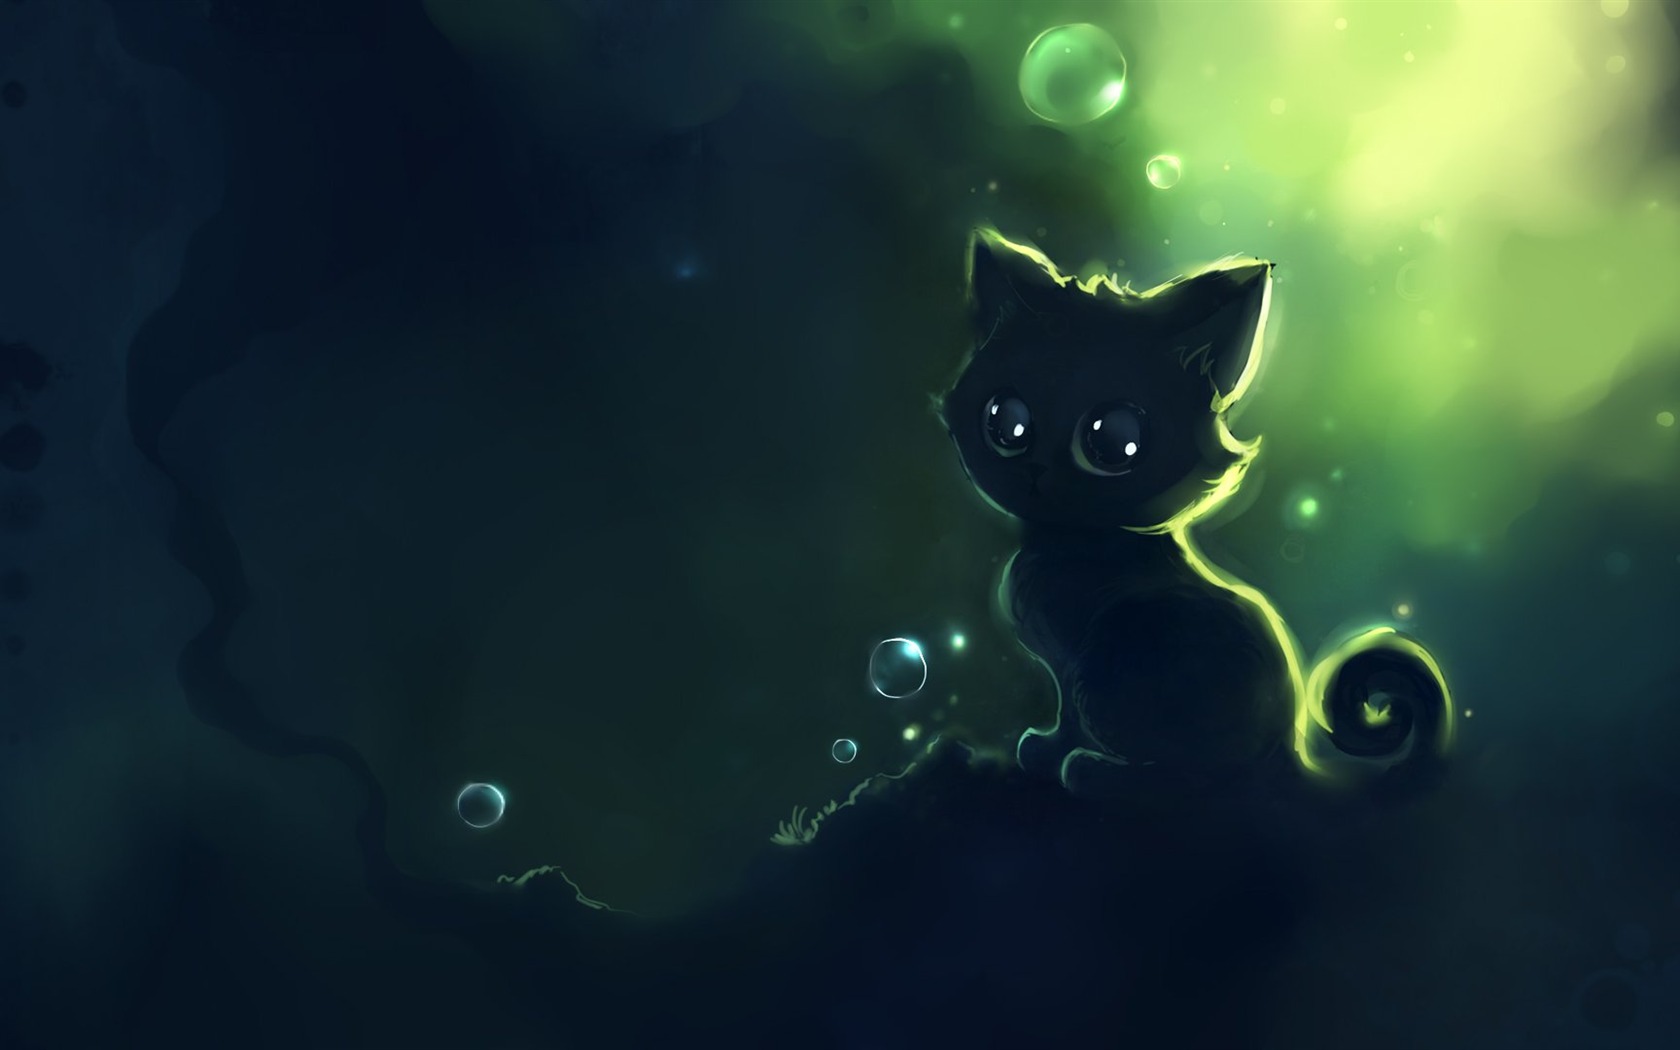 Apofiss pequeño gato negro papel pintado acuarelas #7 - 1680x1050